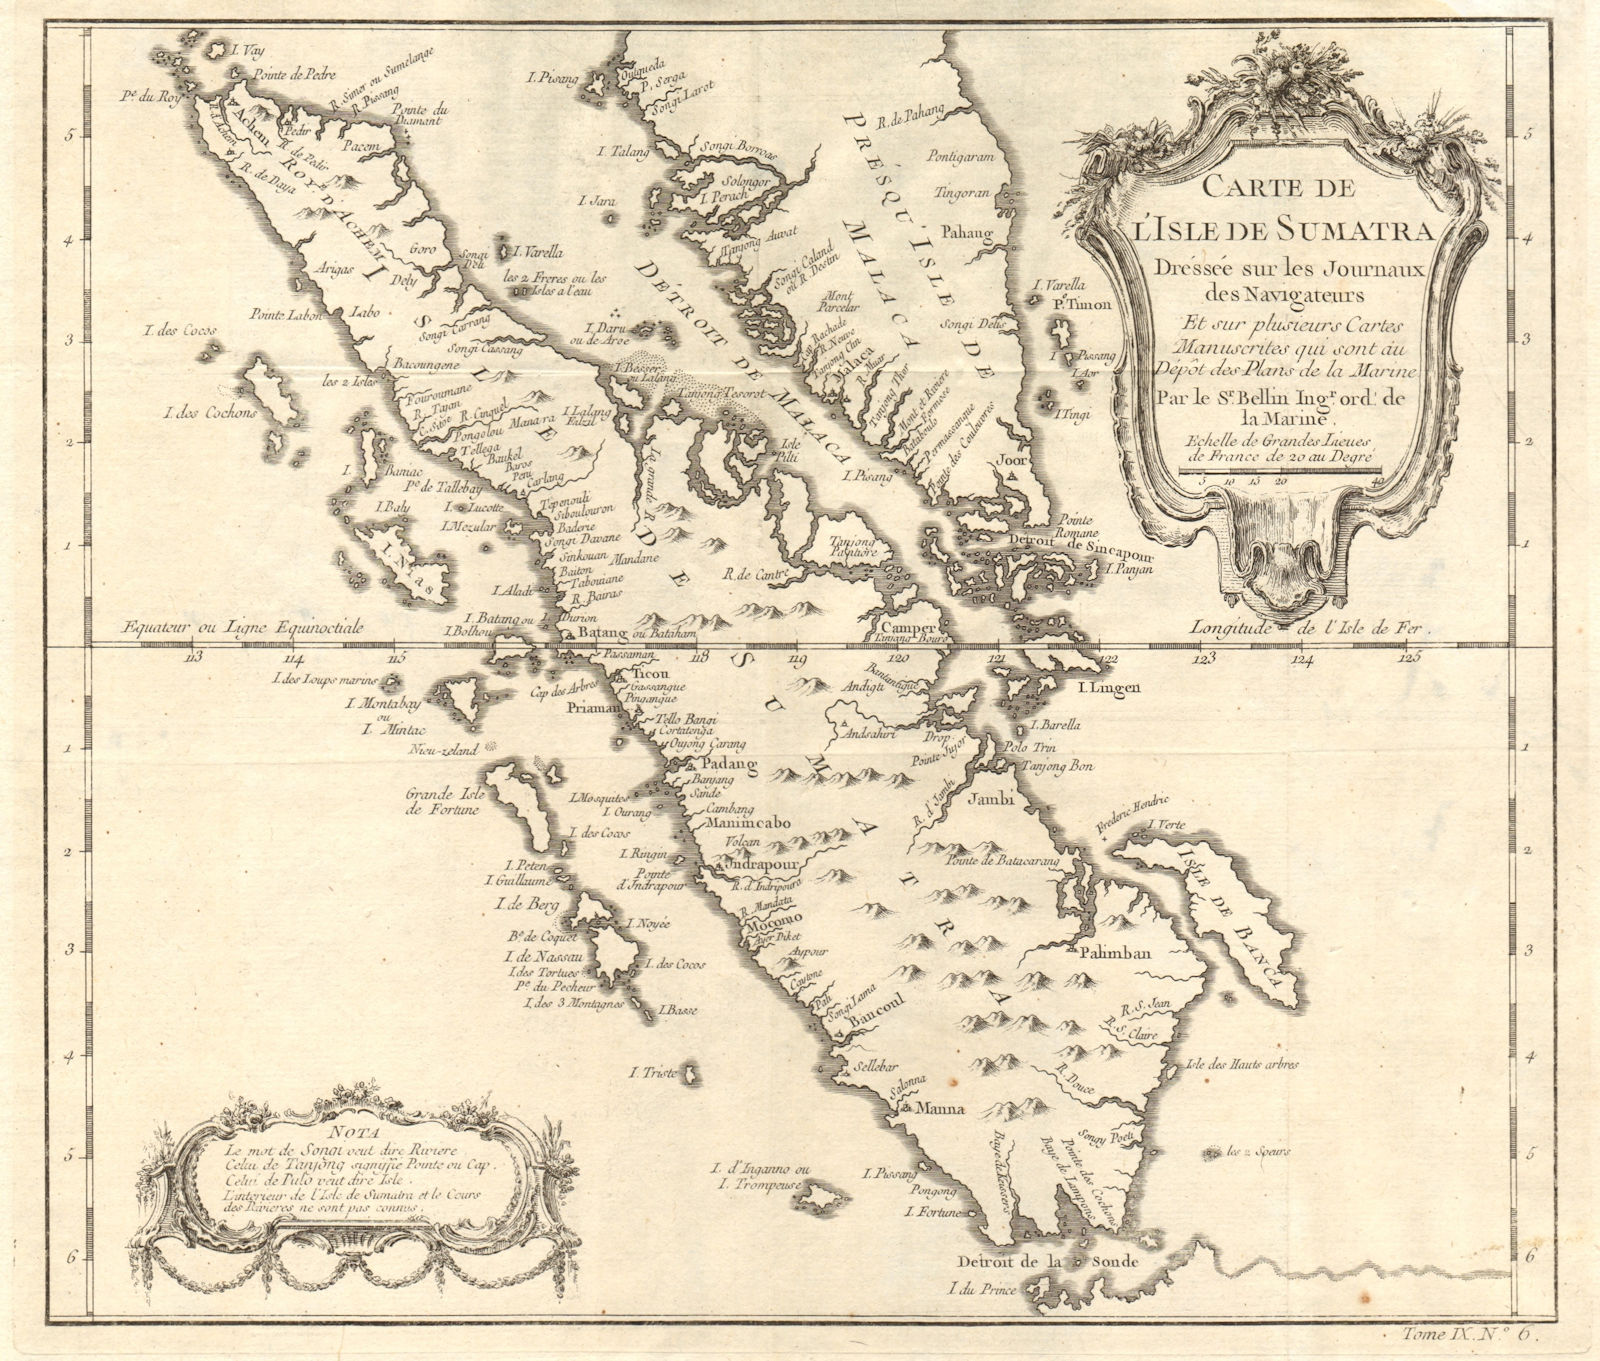 'Carte de l’lsle de Sumatra'. Malay peninsula. Singapore Strait. BELLIN 1751 map